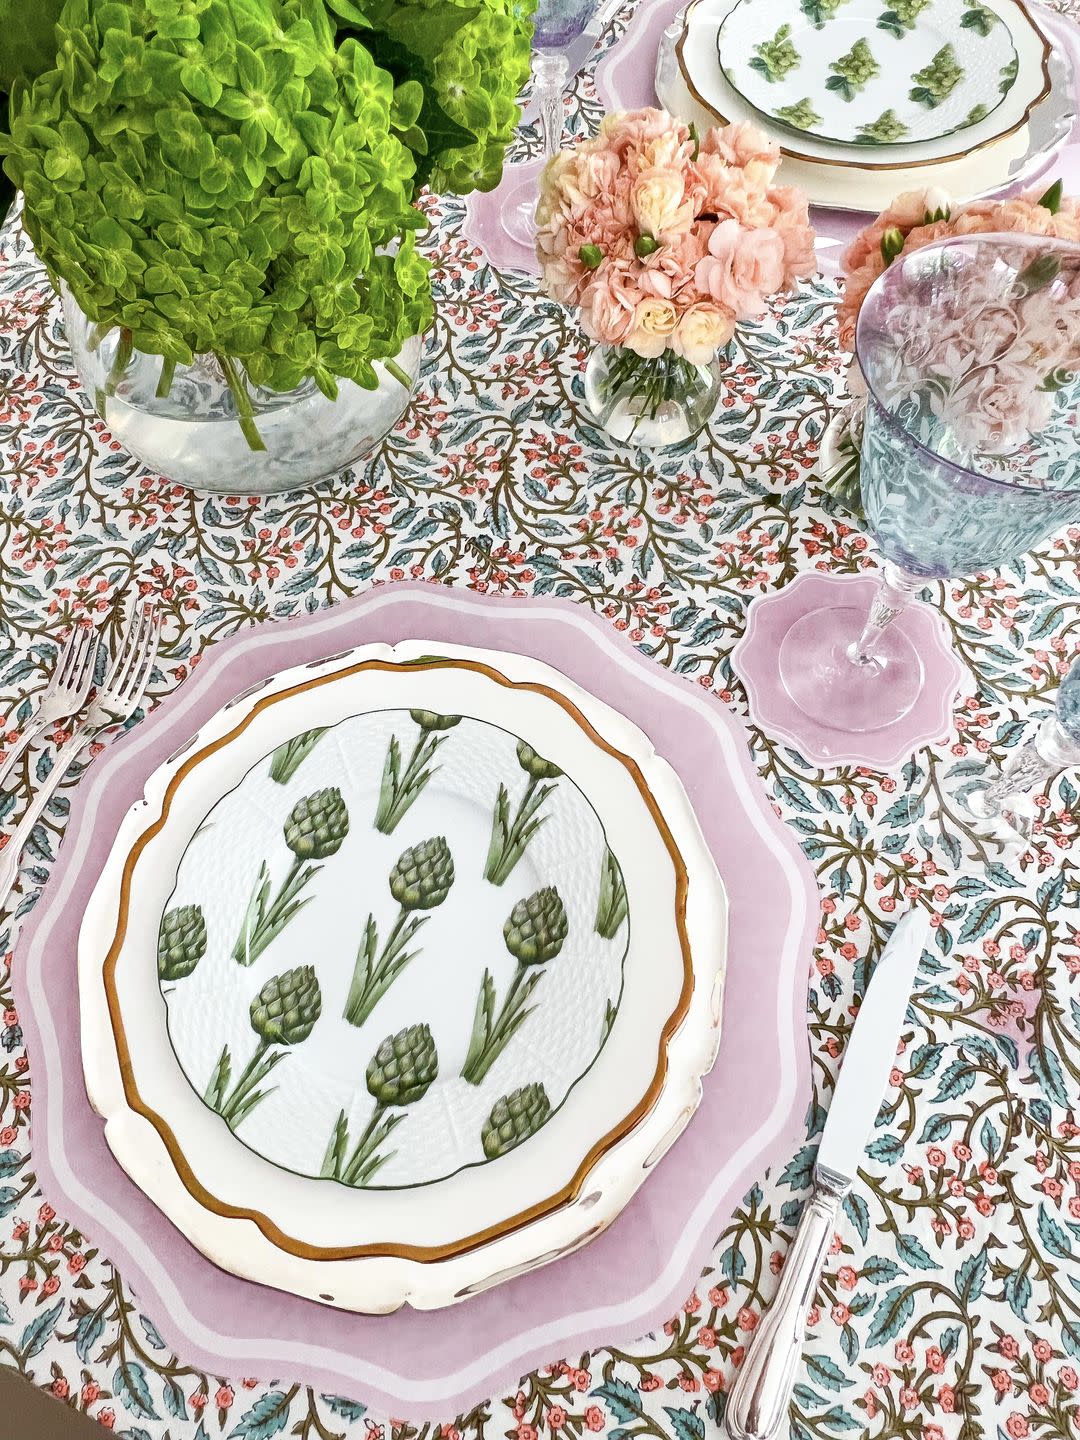 artichoke plate table setting